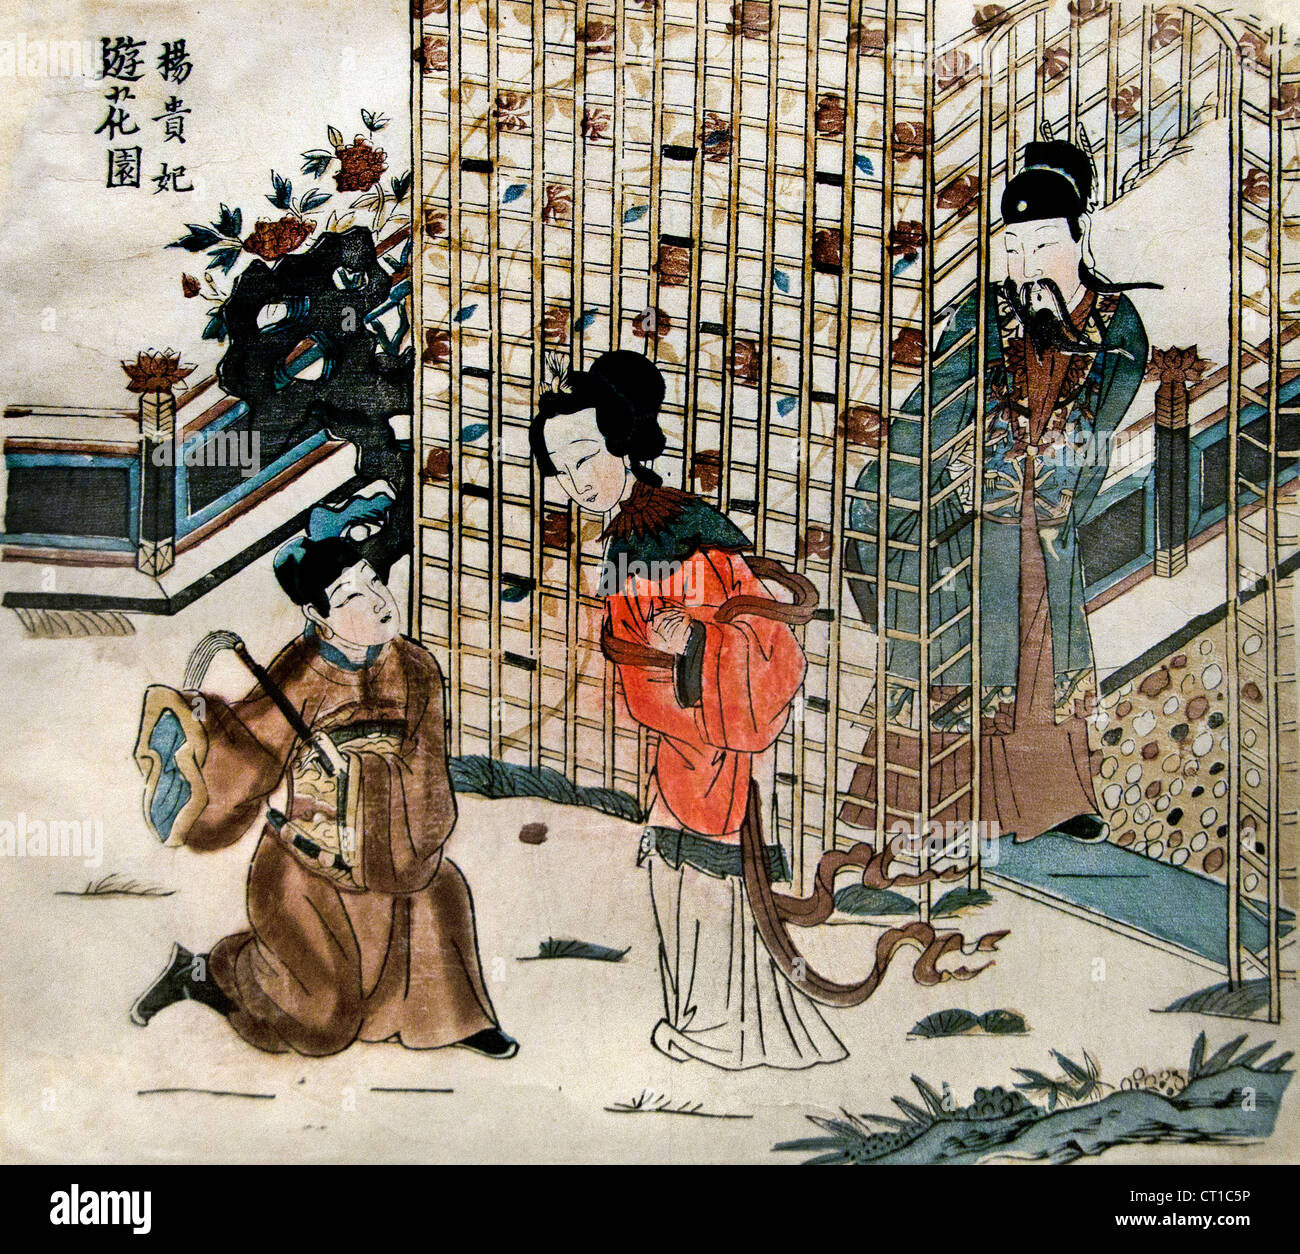 Yang Guifei en un jardín de flores de la dinastía Qing ca. 1644-1753 el medio de cultivo grabado en madera color sobre papel chino China Foto de stock